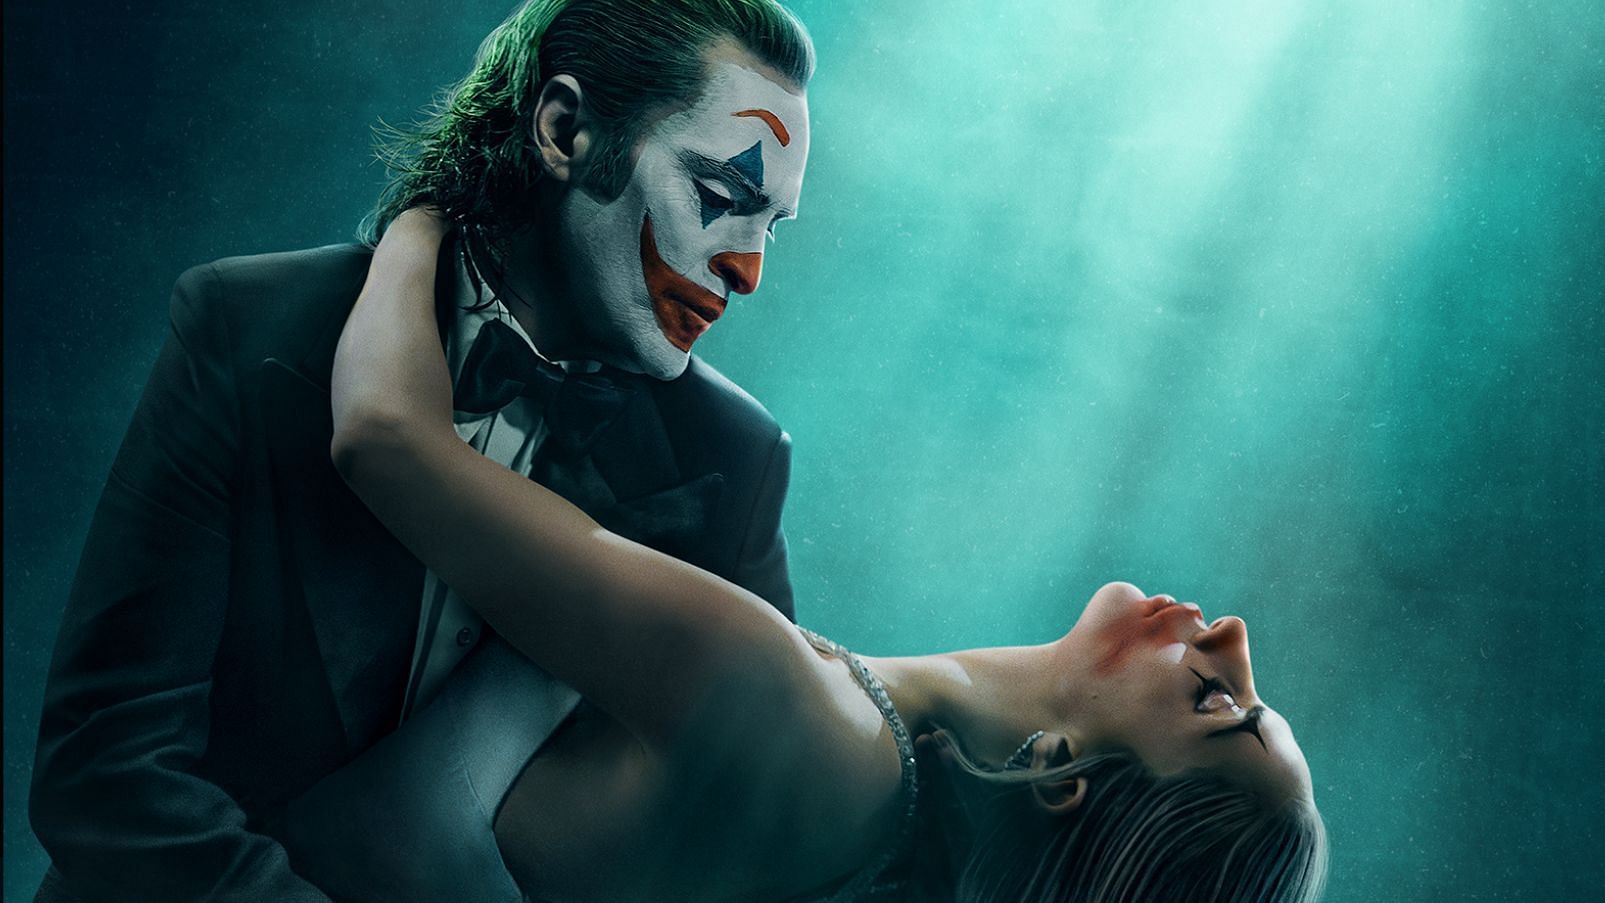 Joker 2 drops first poster, confirms trailer release date